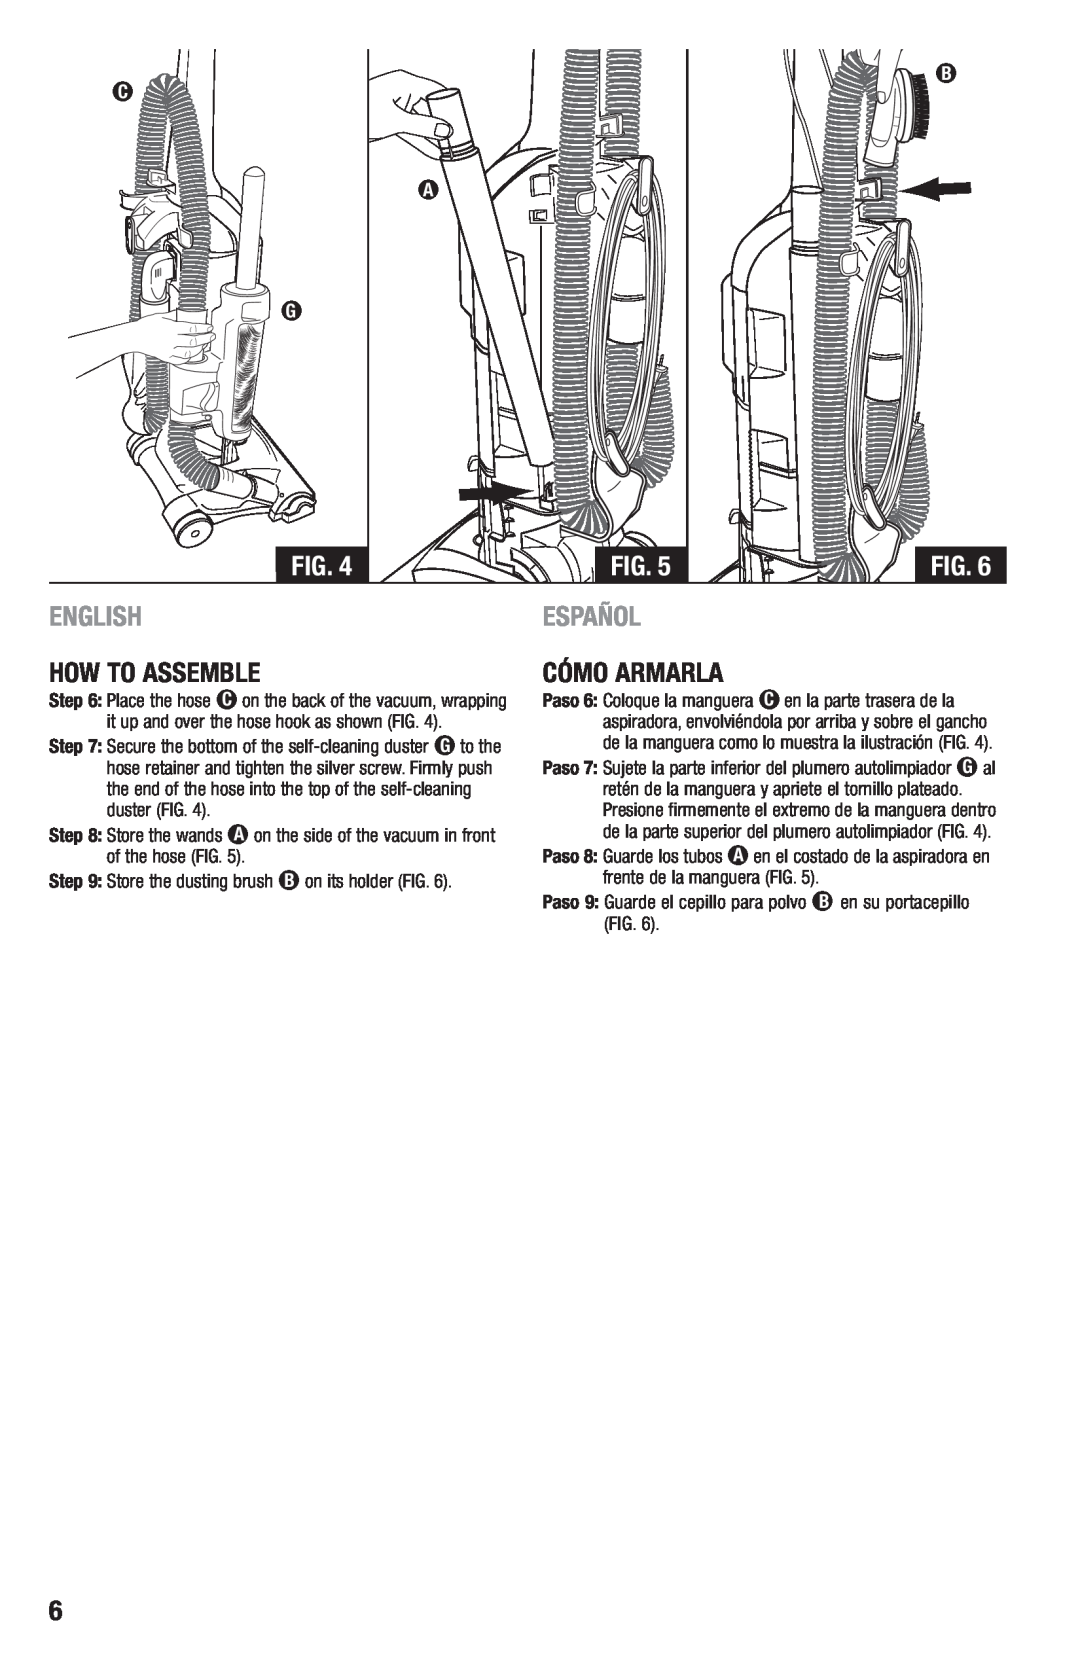 Eureka 2970-2999 Series manual English, Español, Paso 9 Guarde el cepillo para polvo B en su portacepillo FIG 